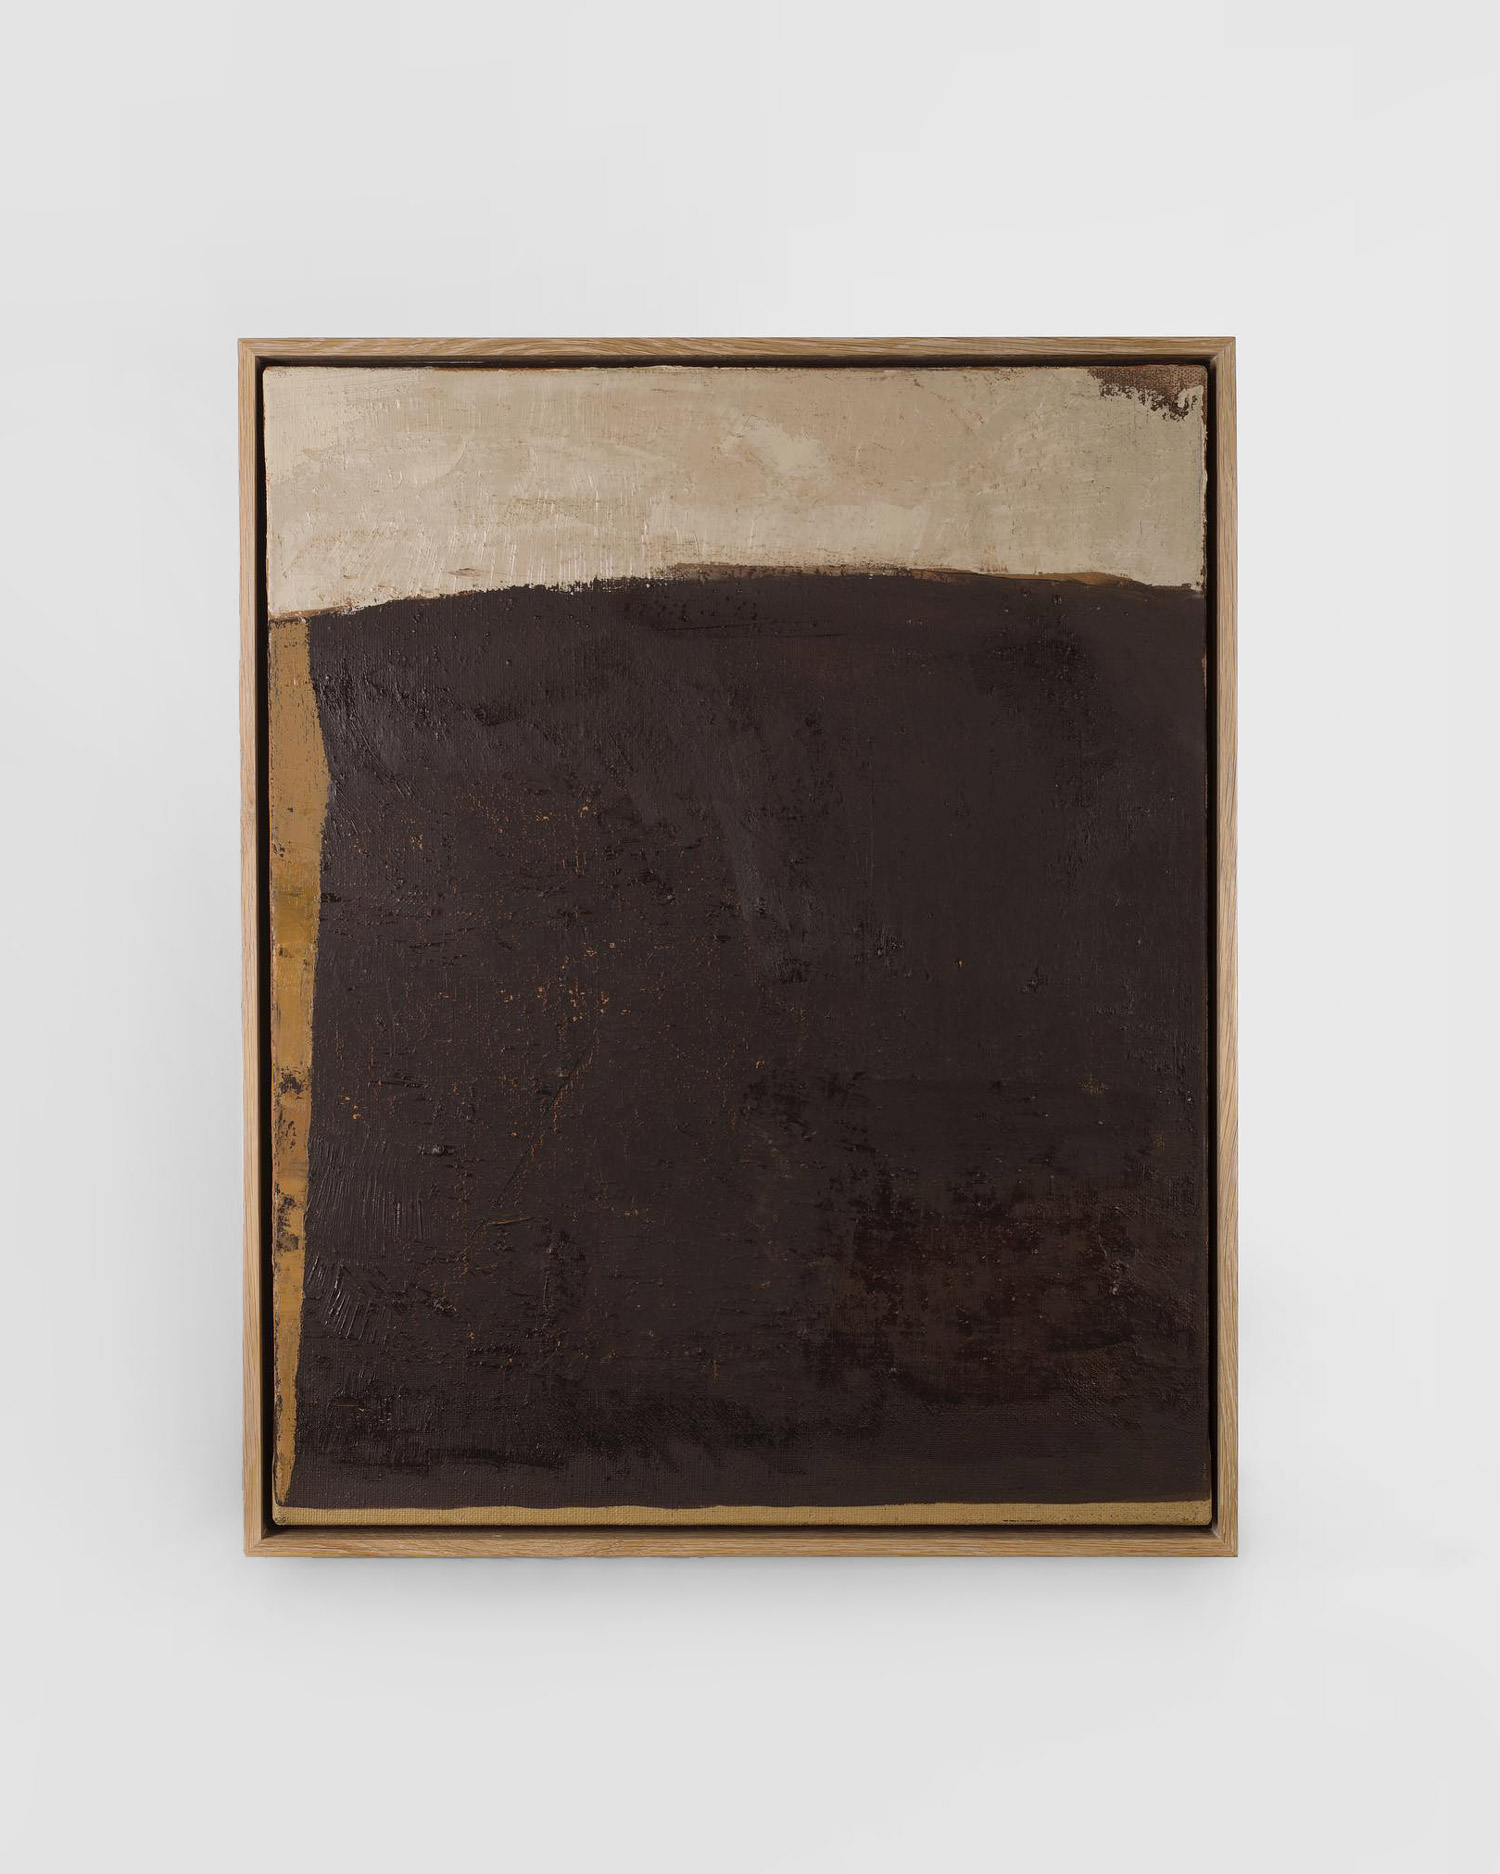 ‘Pot Kettle Black’ by Deborah Tarr. Cadogan Contemporary has represented Debroah Tarr in London for over twenty years. © Image via Cadogan Gallery